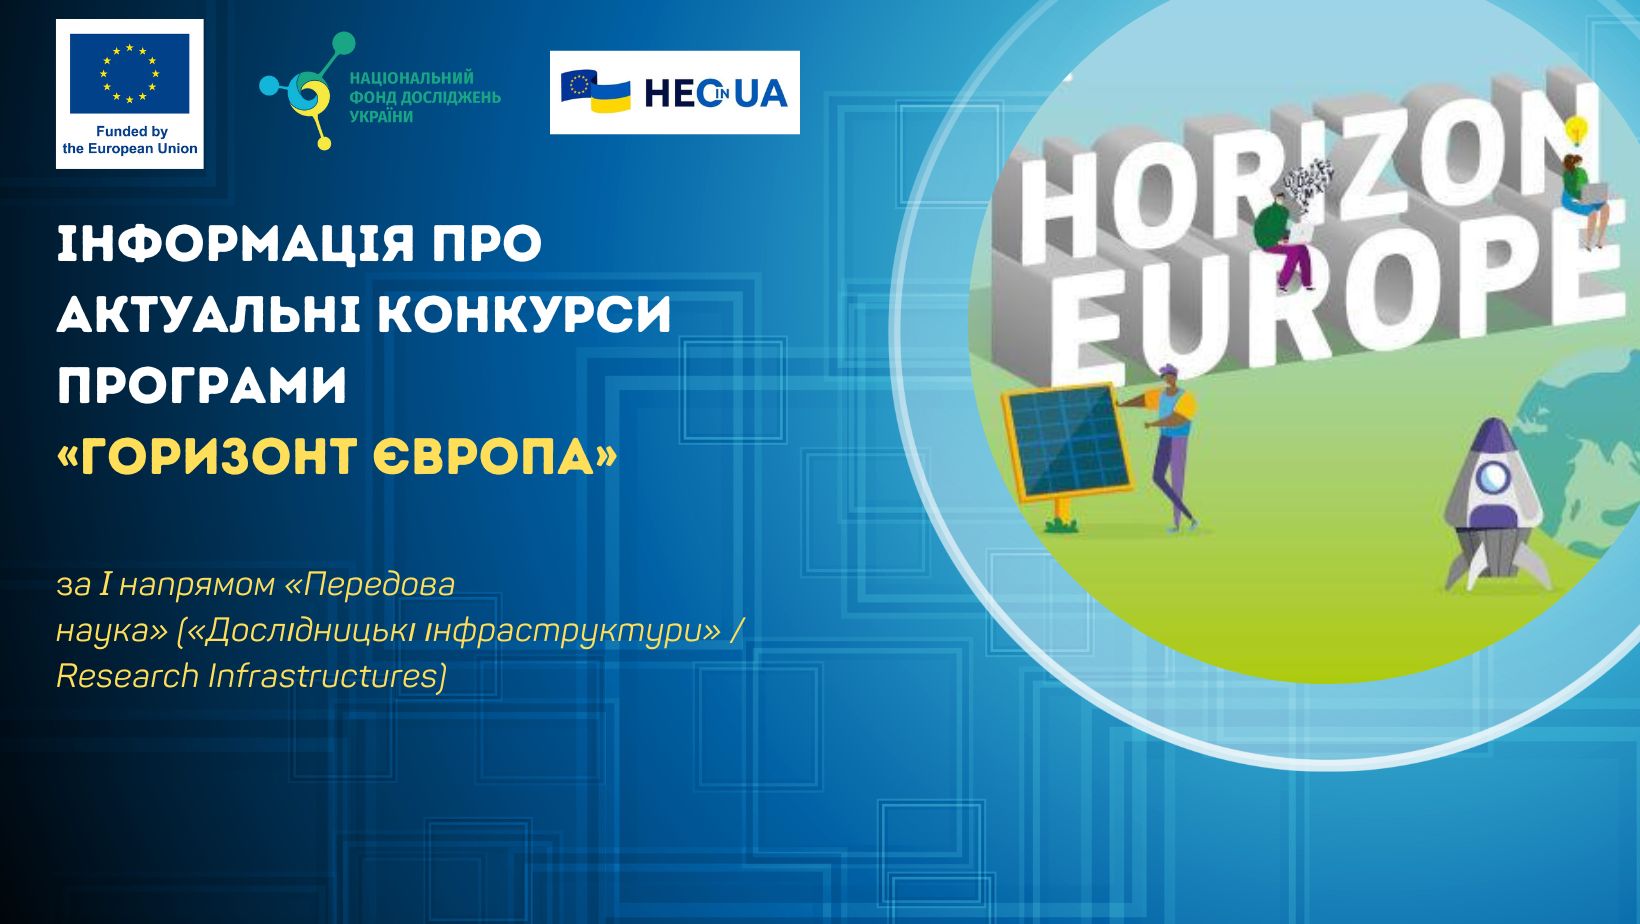 «Офіс Горизонт Європа в Україні» нагадує про відкриті конкурси за напрямом «Дослідницькі інфраструктури» (Research Infrastructures) РП «Горизонт Європа»